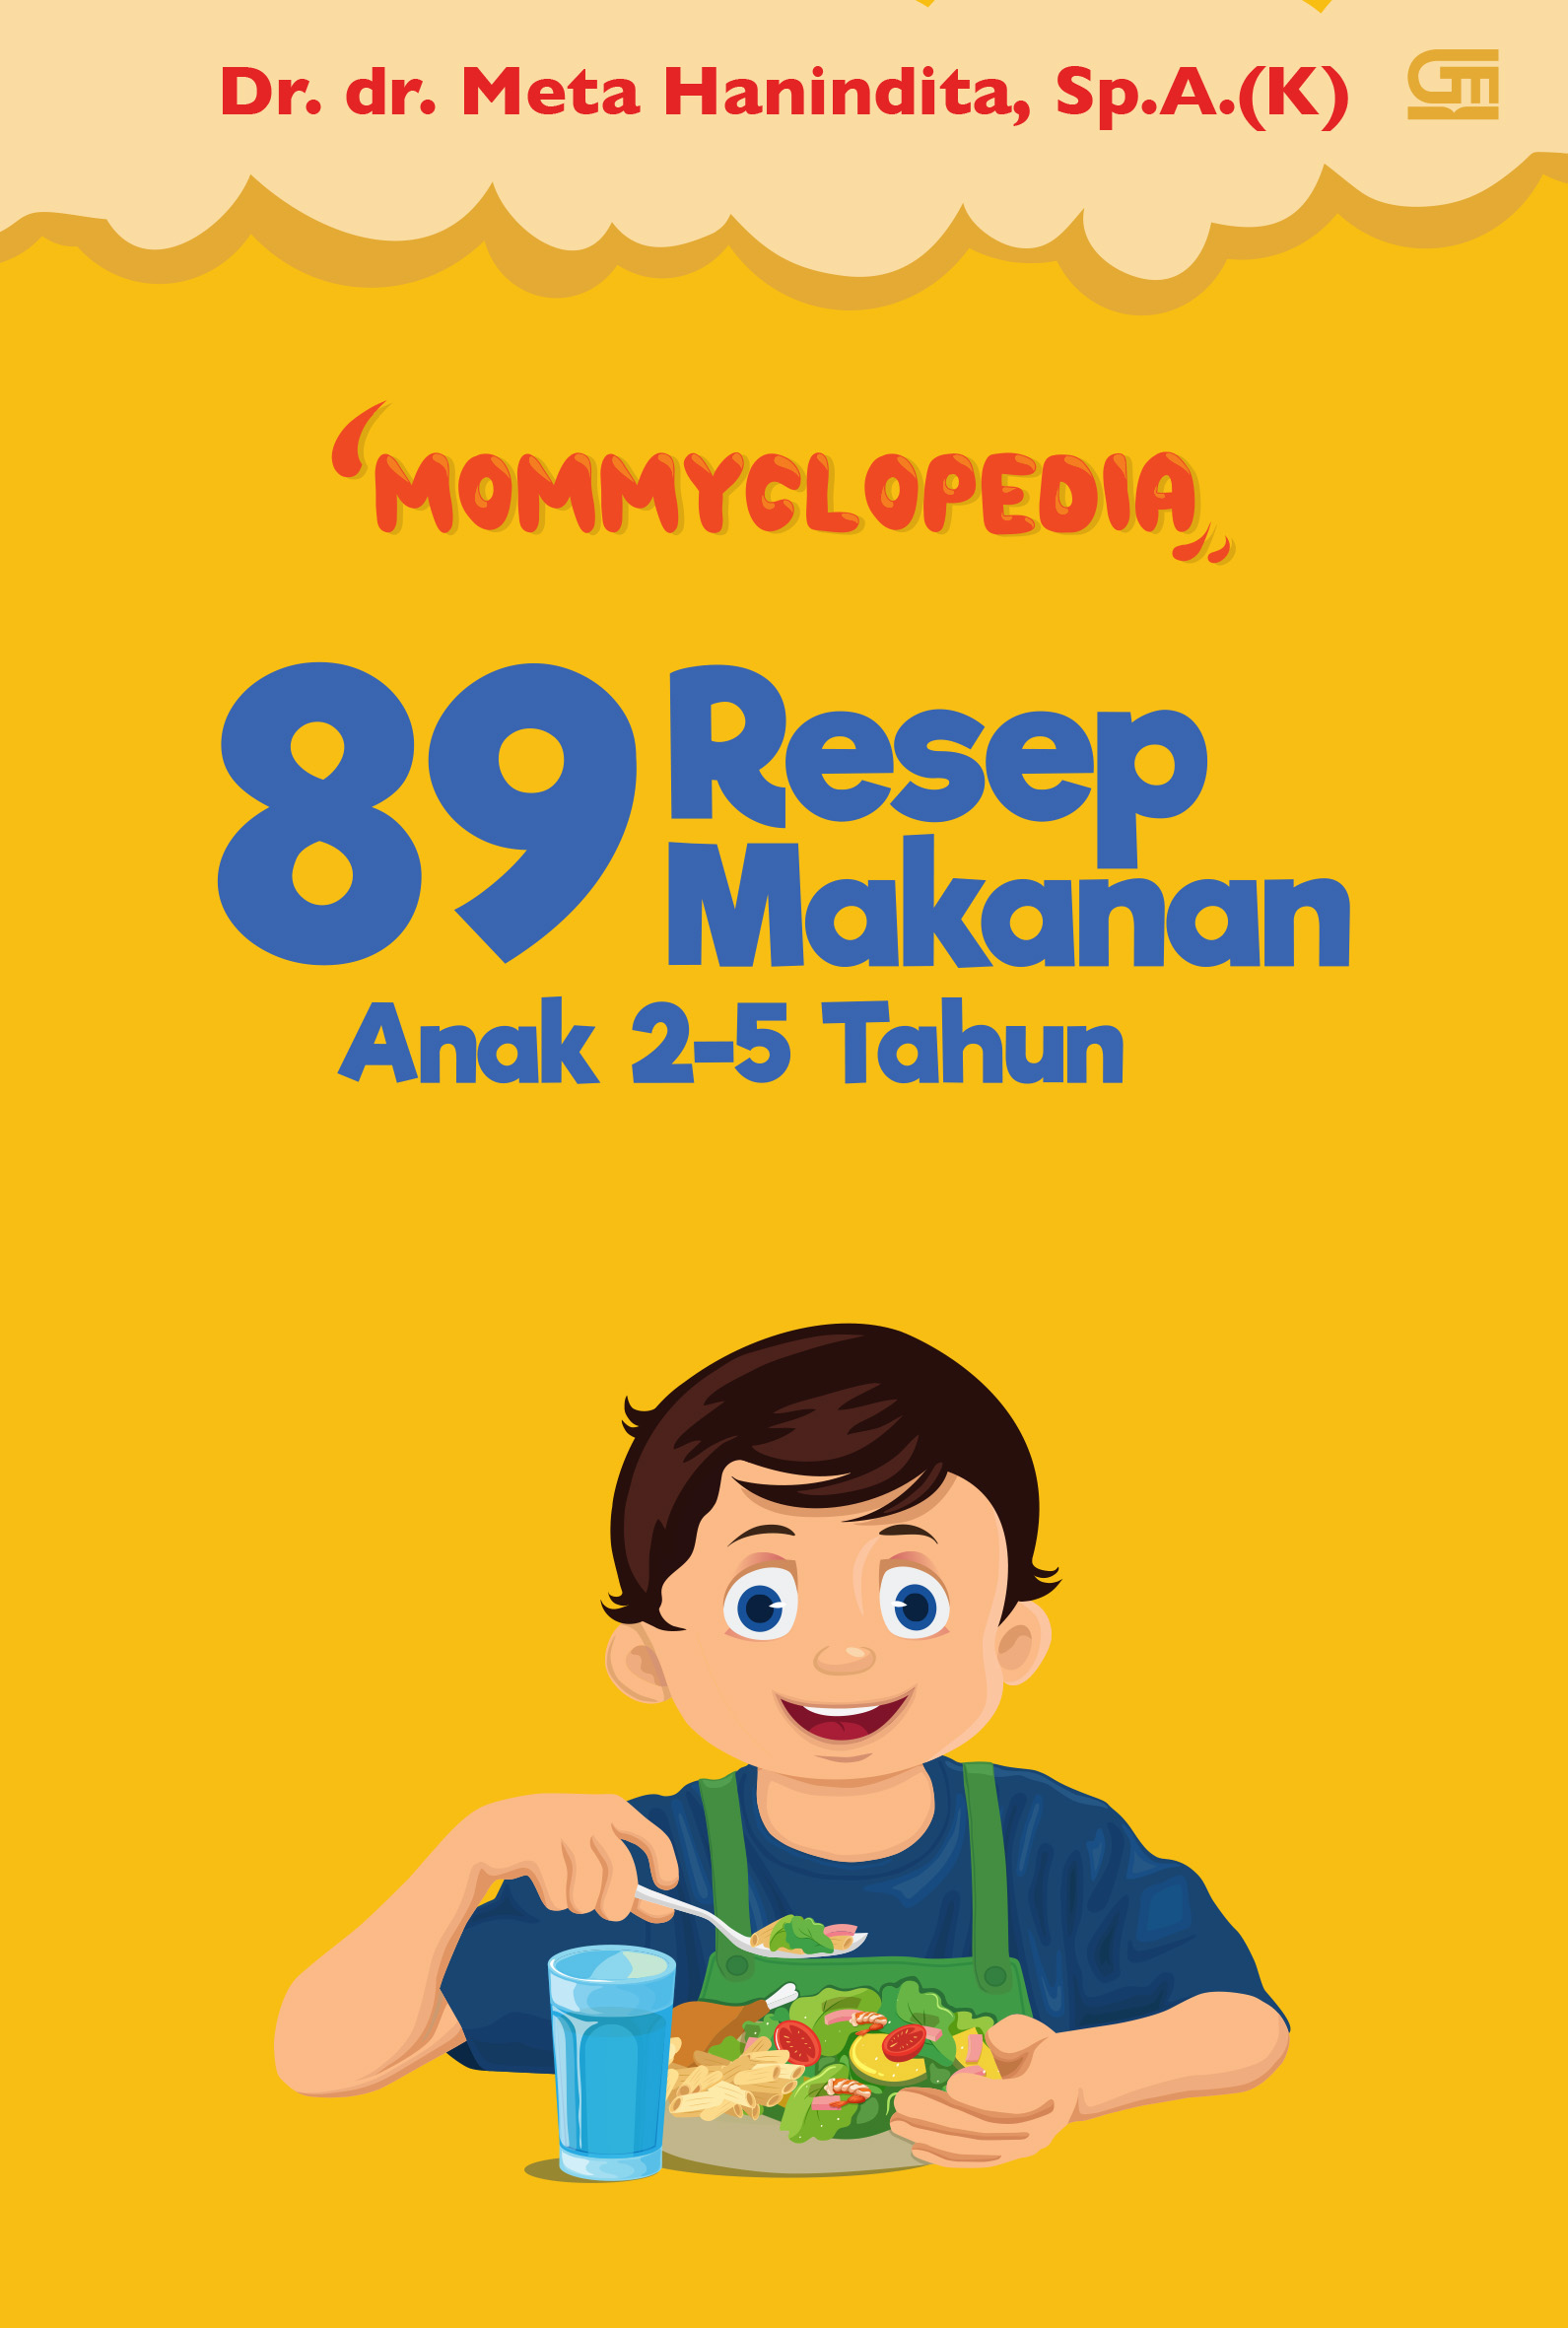 mommyclopedia-89-resep-makanan-anak-2-5-tahun